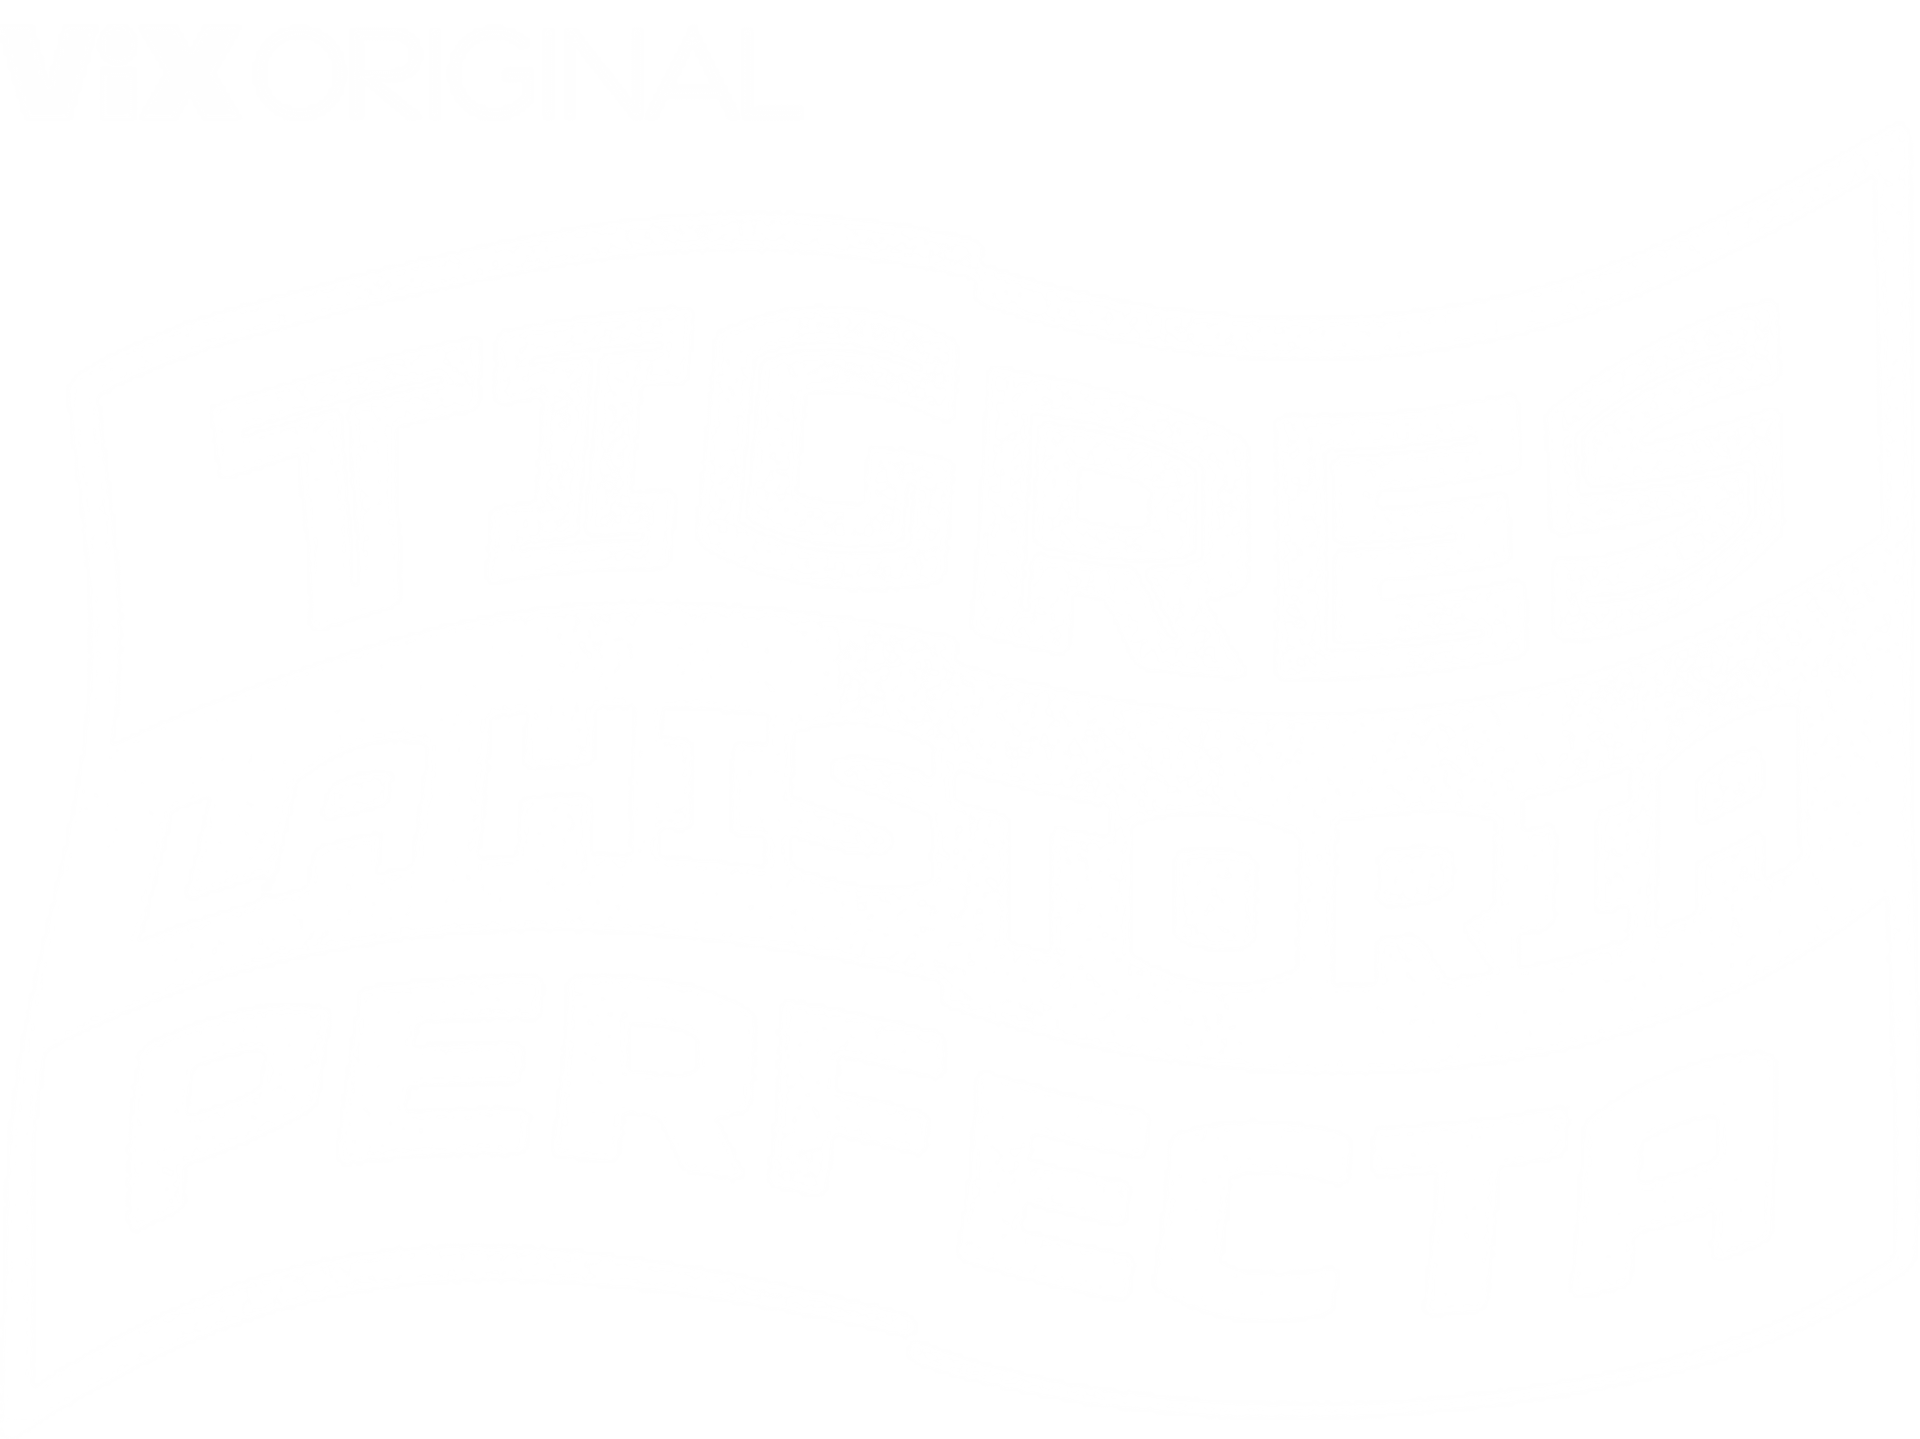 Tigres: La historia perfecta | ViX